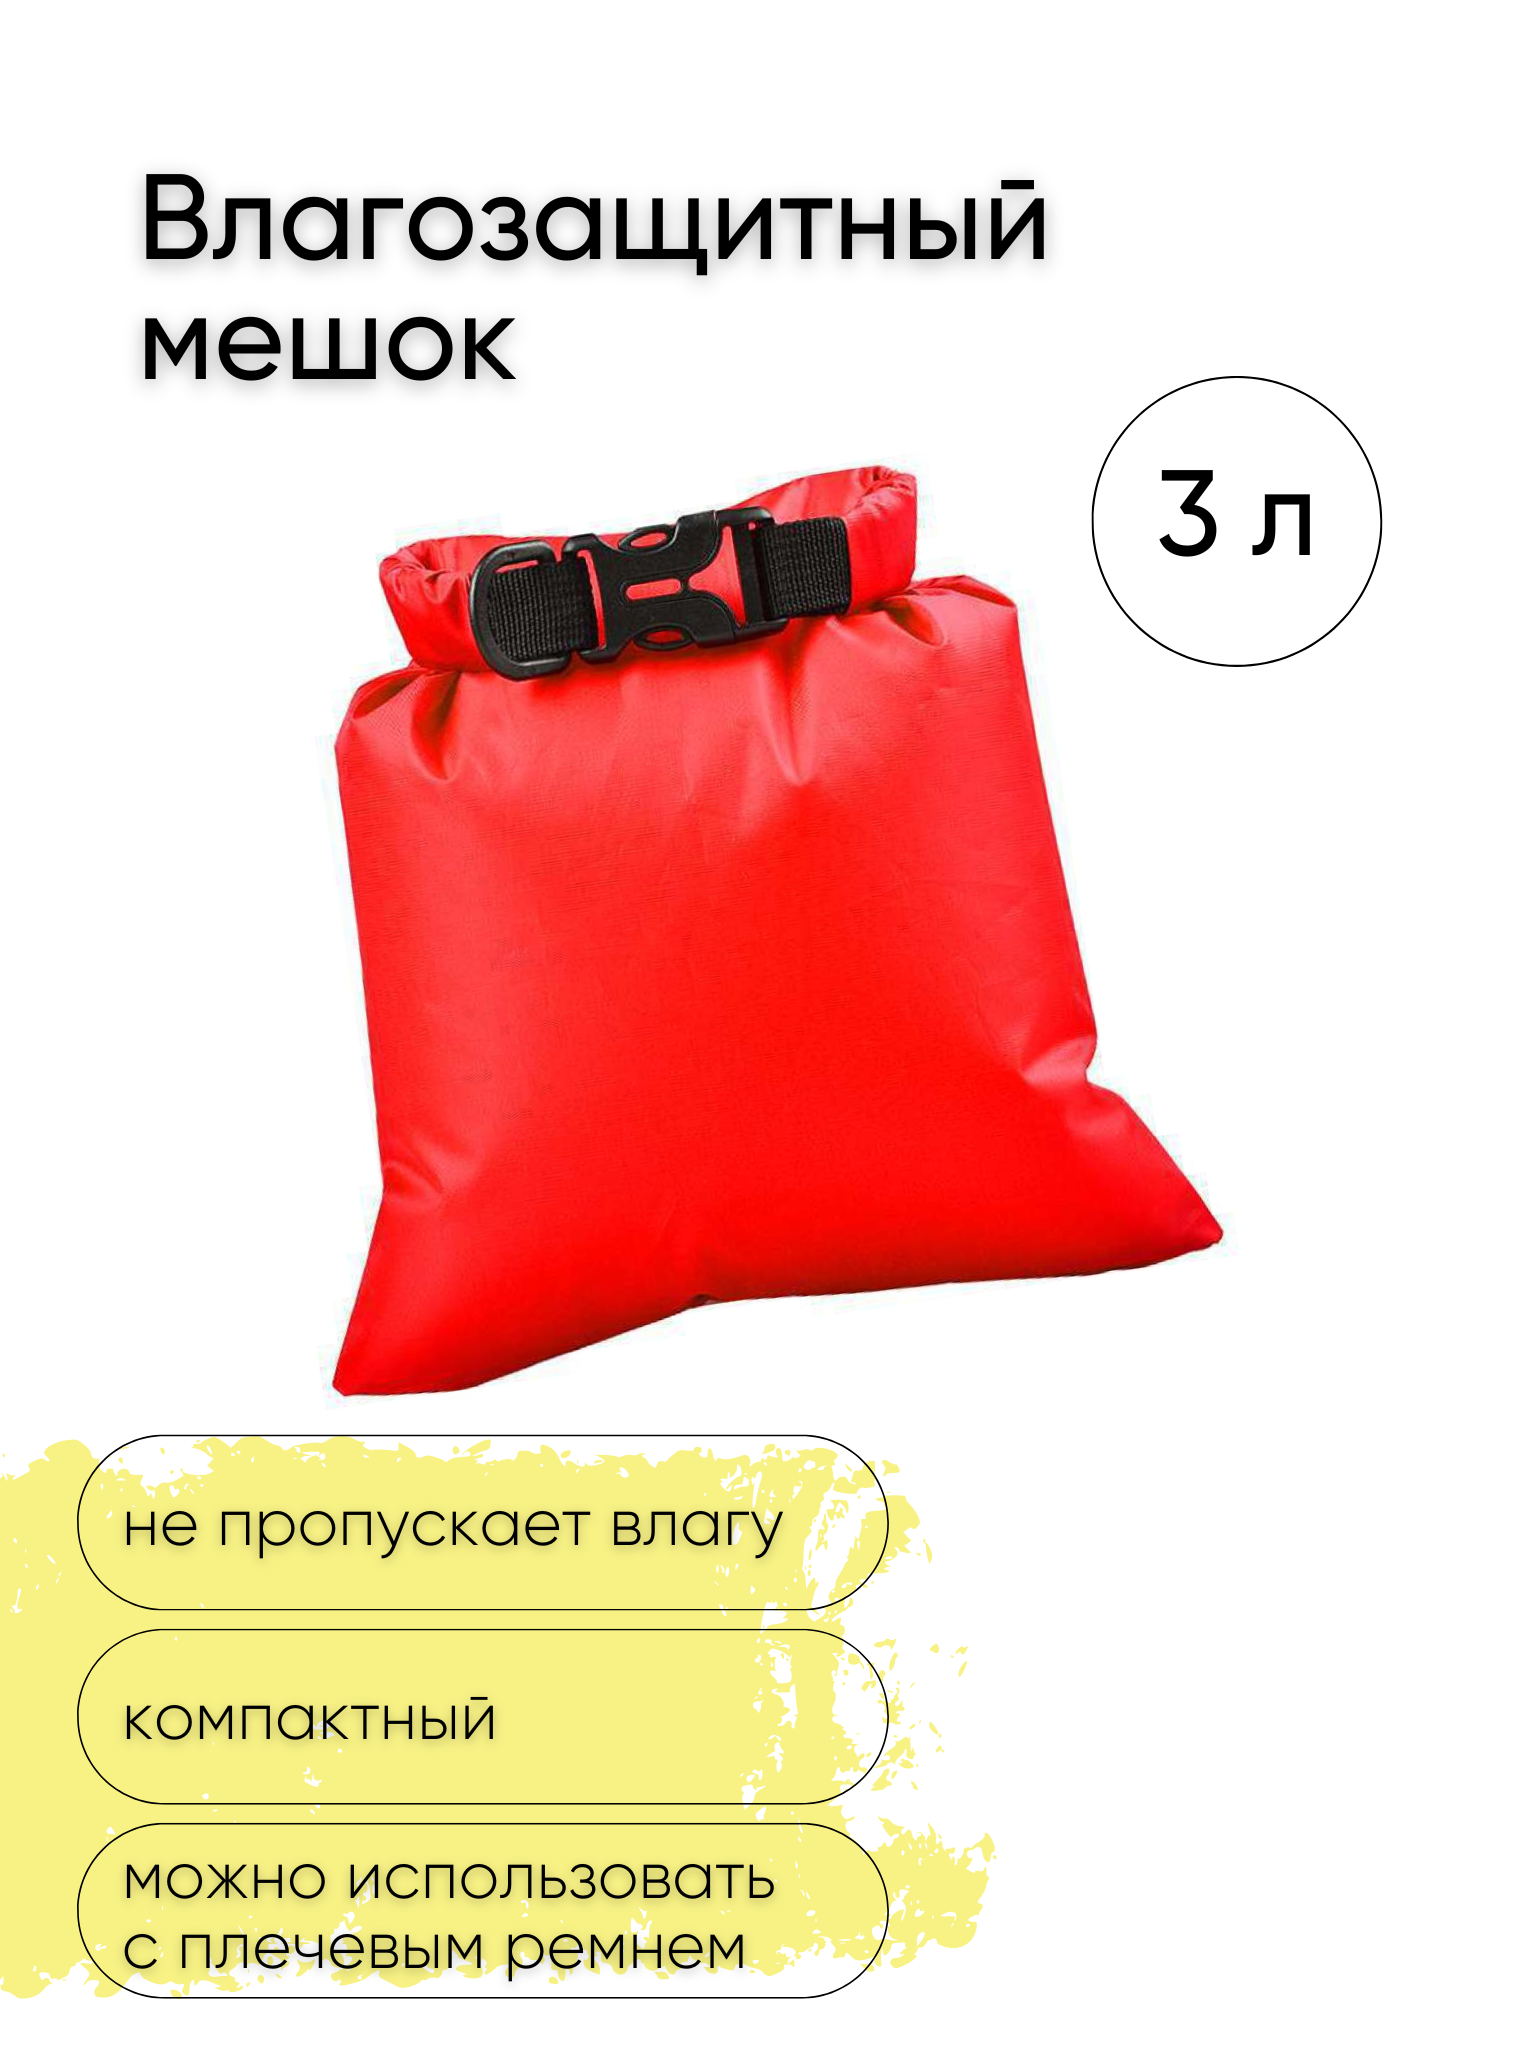 Водонепроницаемая сумка, Гермочехол, Гермосумка, цвет красный, объем 3 л.